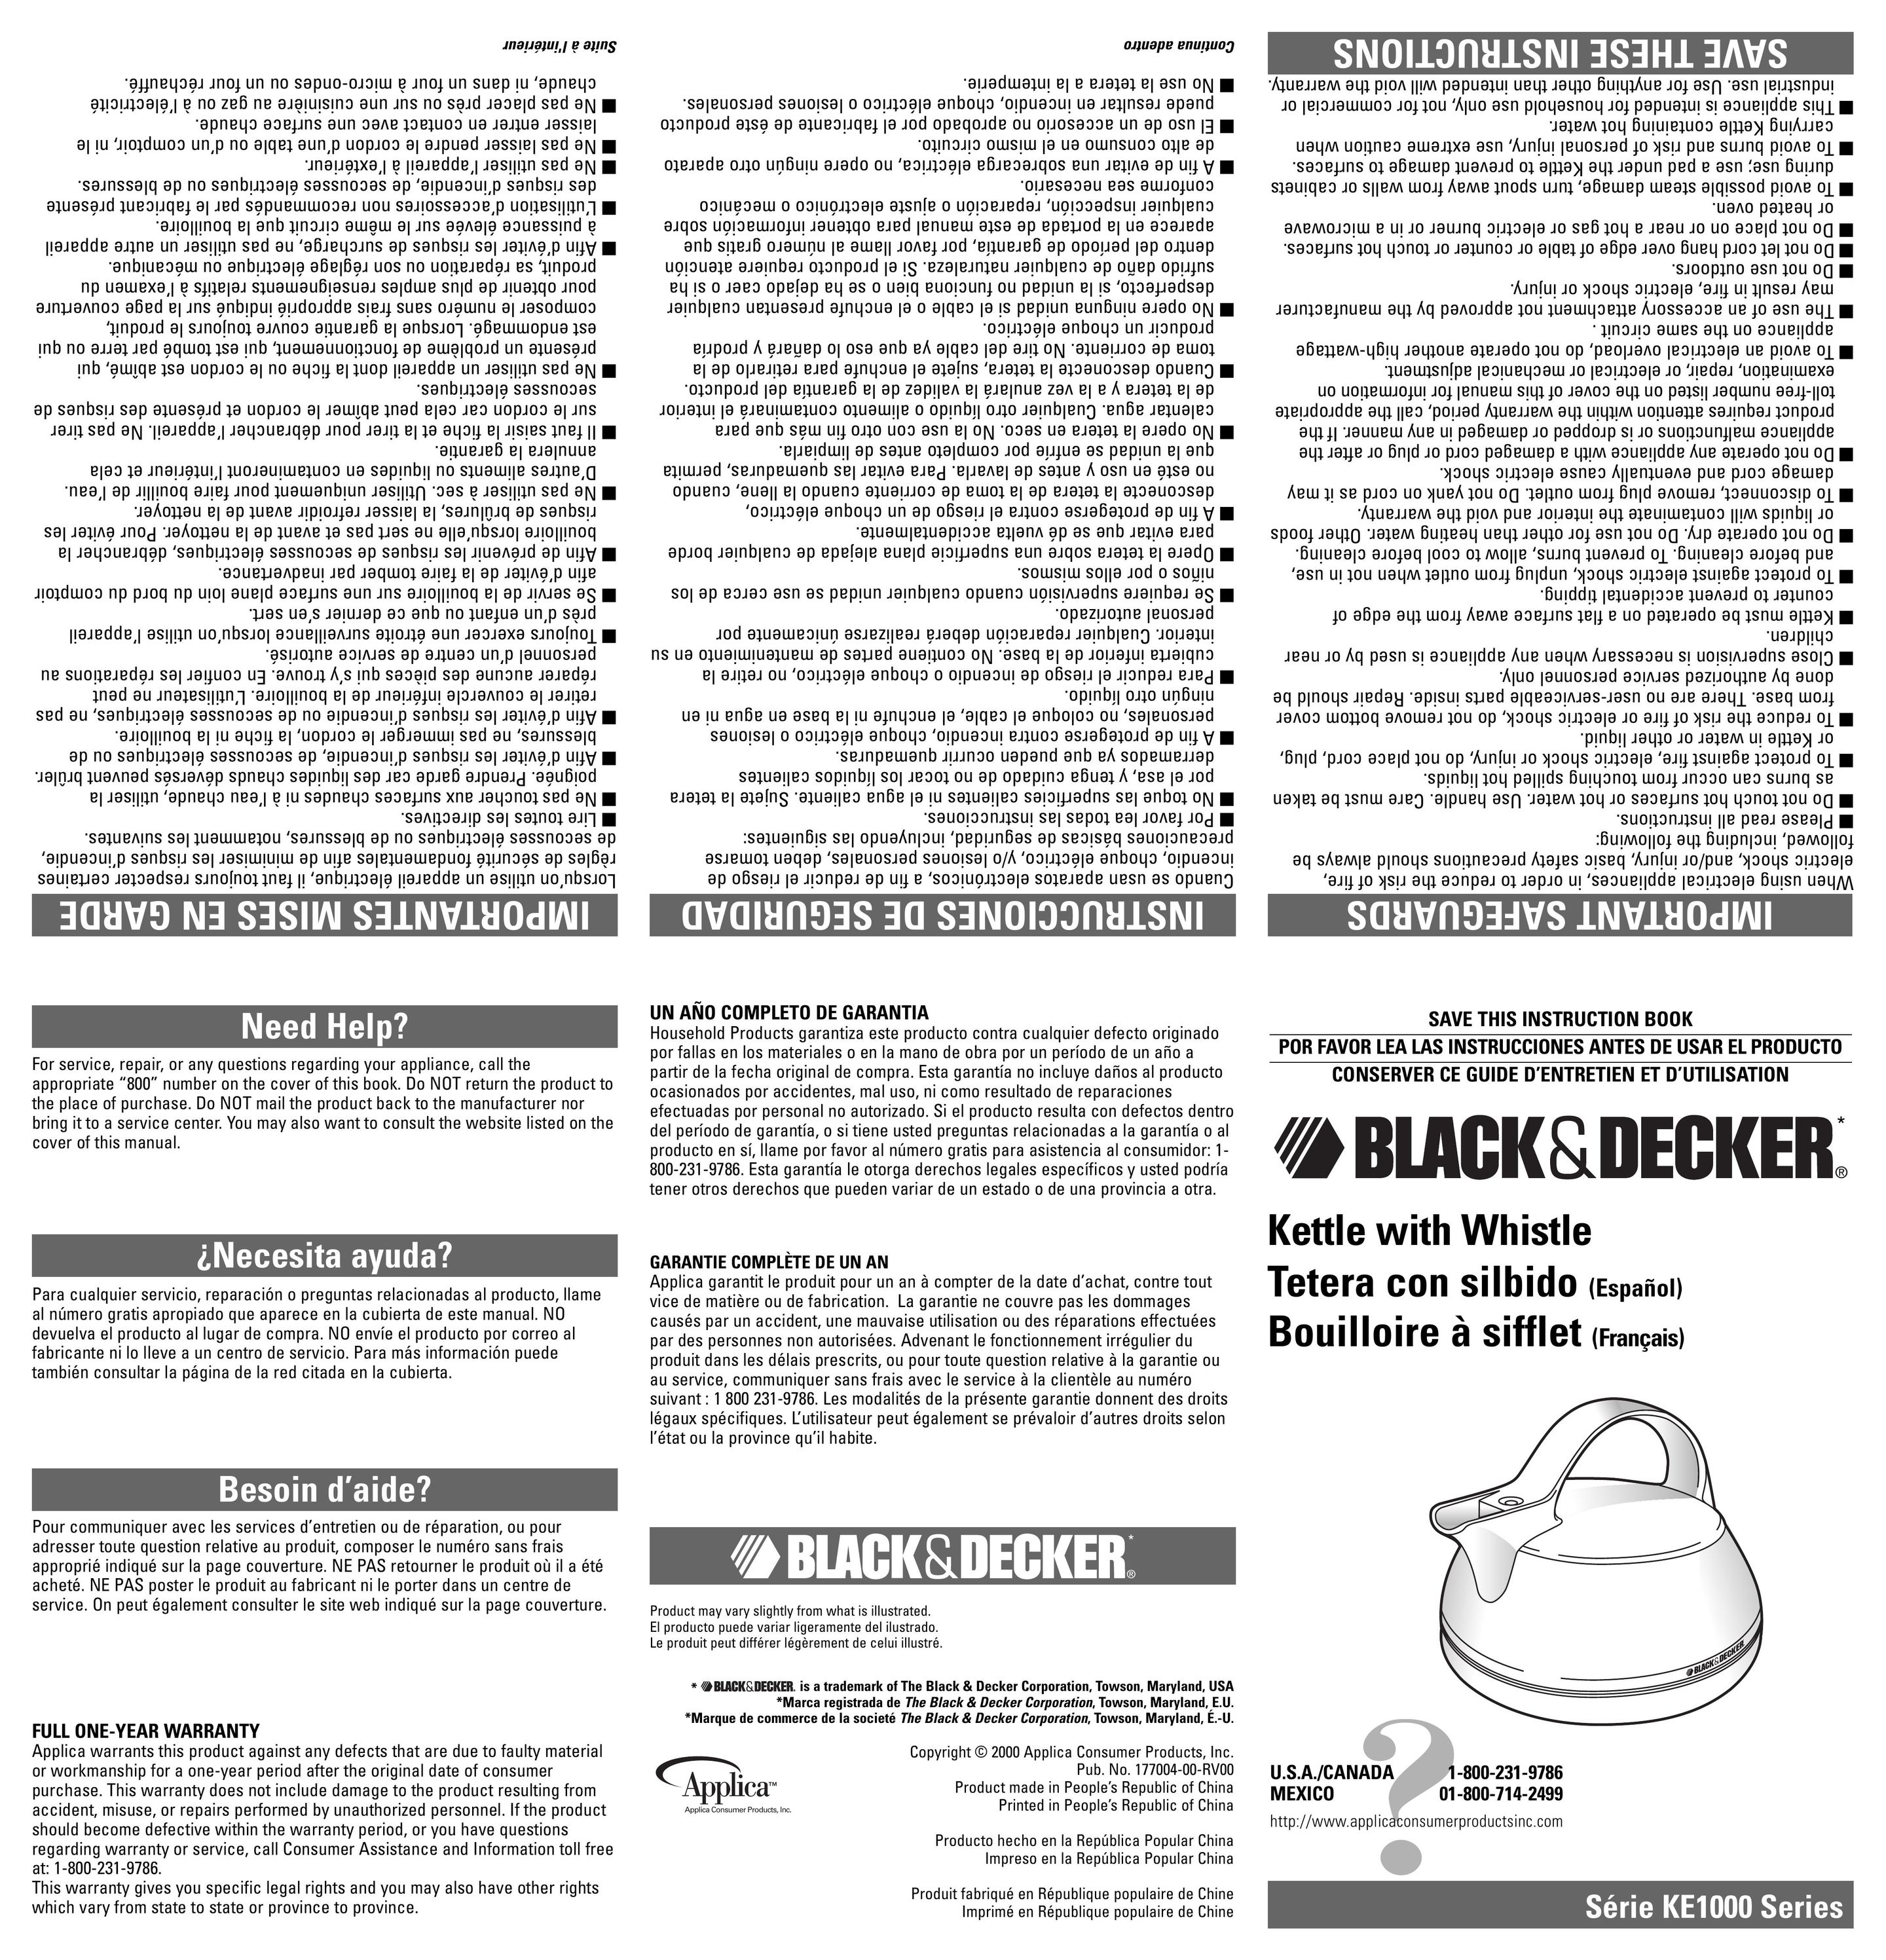 Black & Decker KE1000 Hot Beverage Maker User Manual